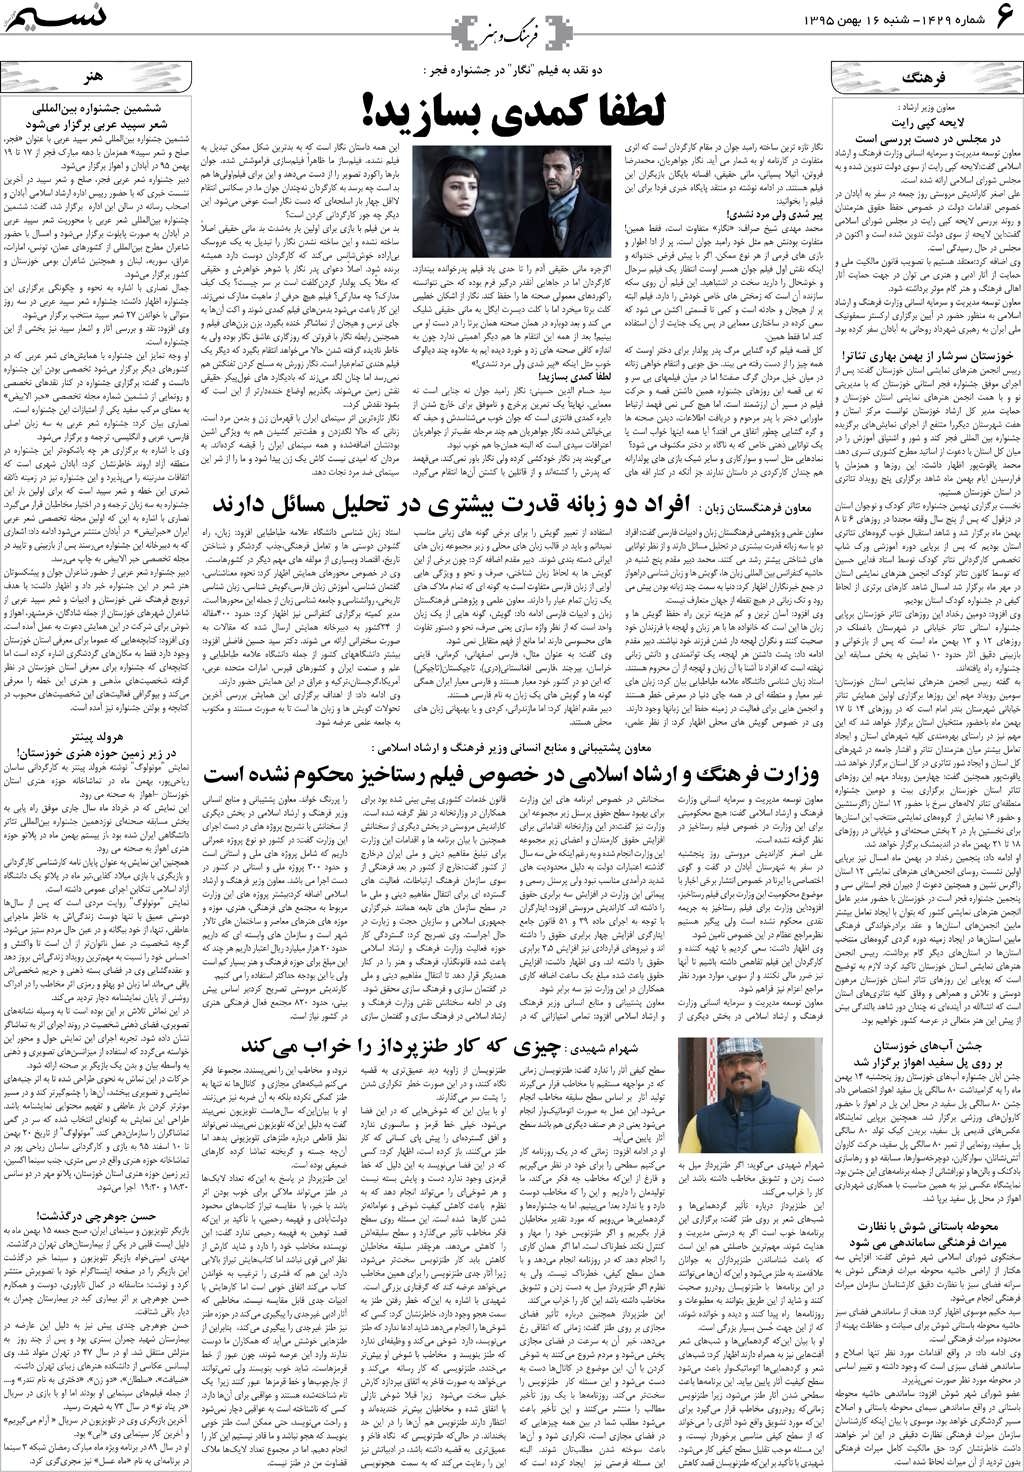 صفحه فرهنگ و هنر روزنامه نسیم شماره 1429